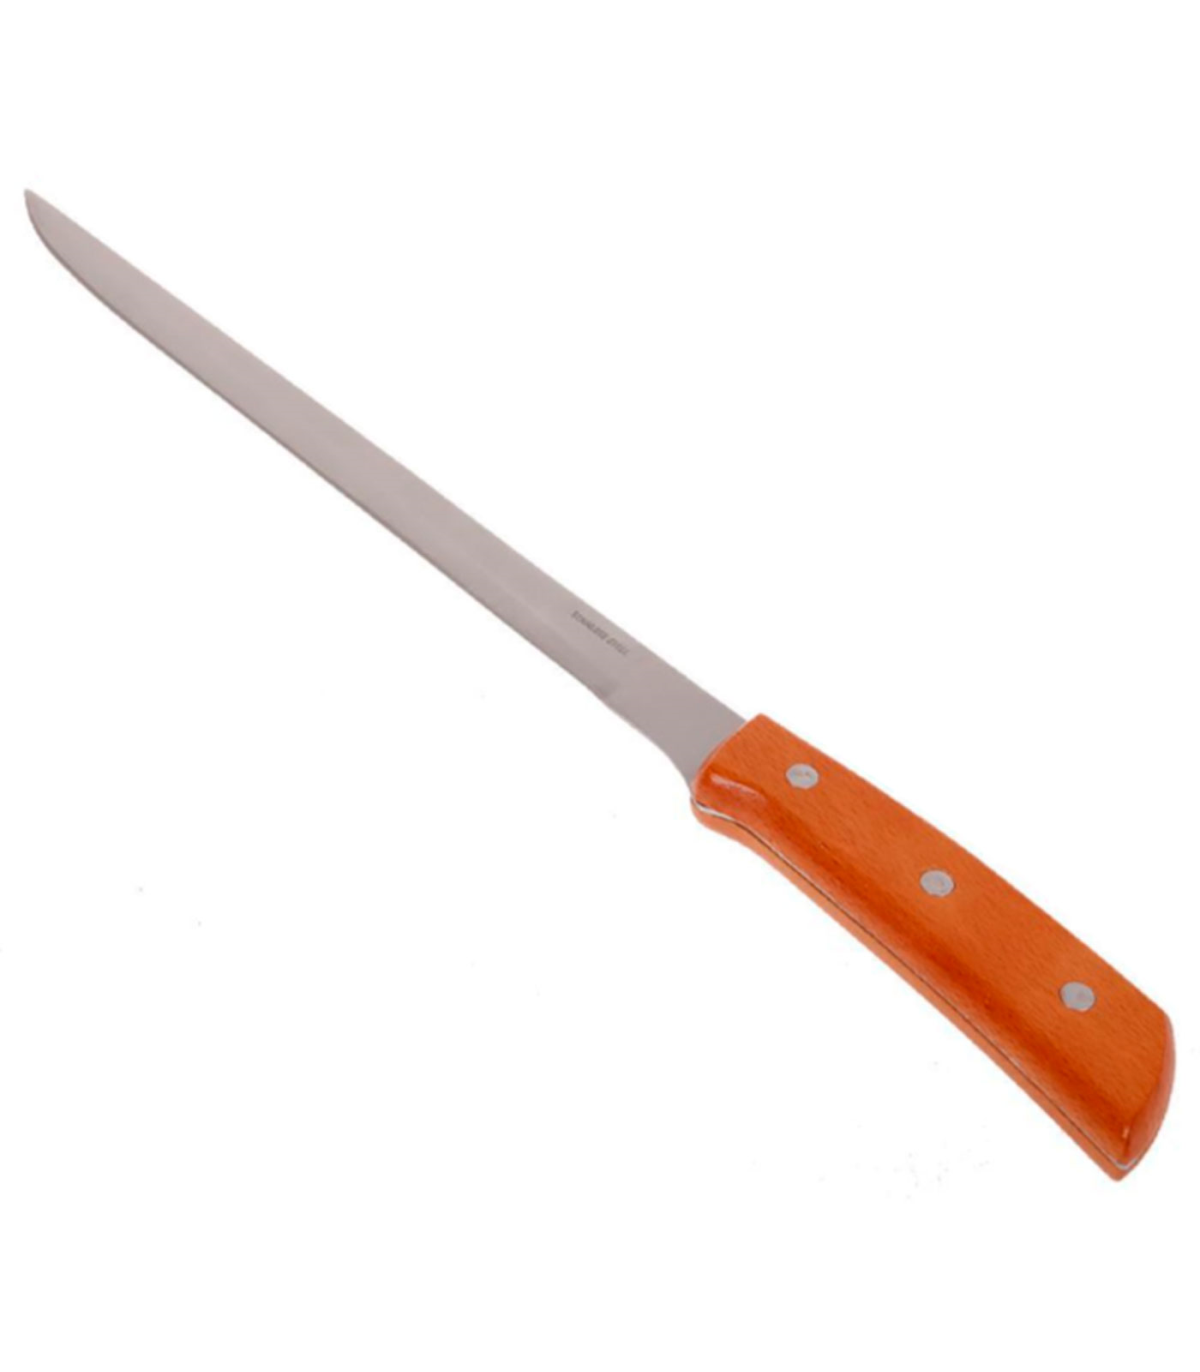 Tradineur - Cuchillo jamonero con hoja de acero inoxidable y mango de  madera, cuchillo cortado de jamón, corte preciso, profesio